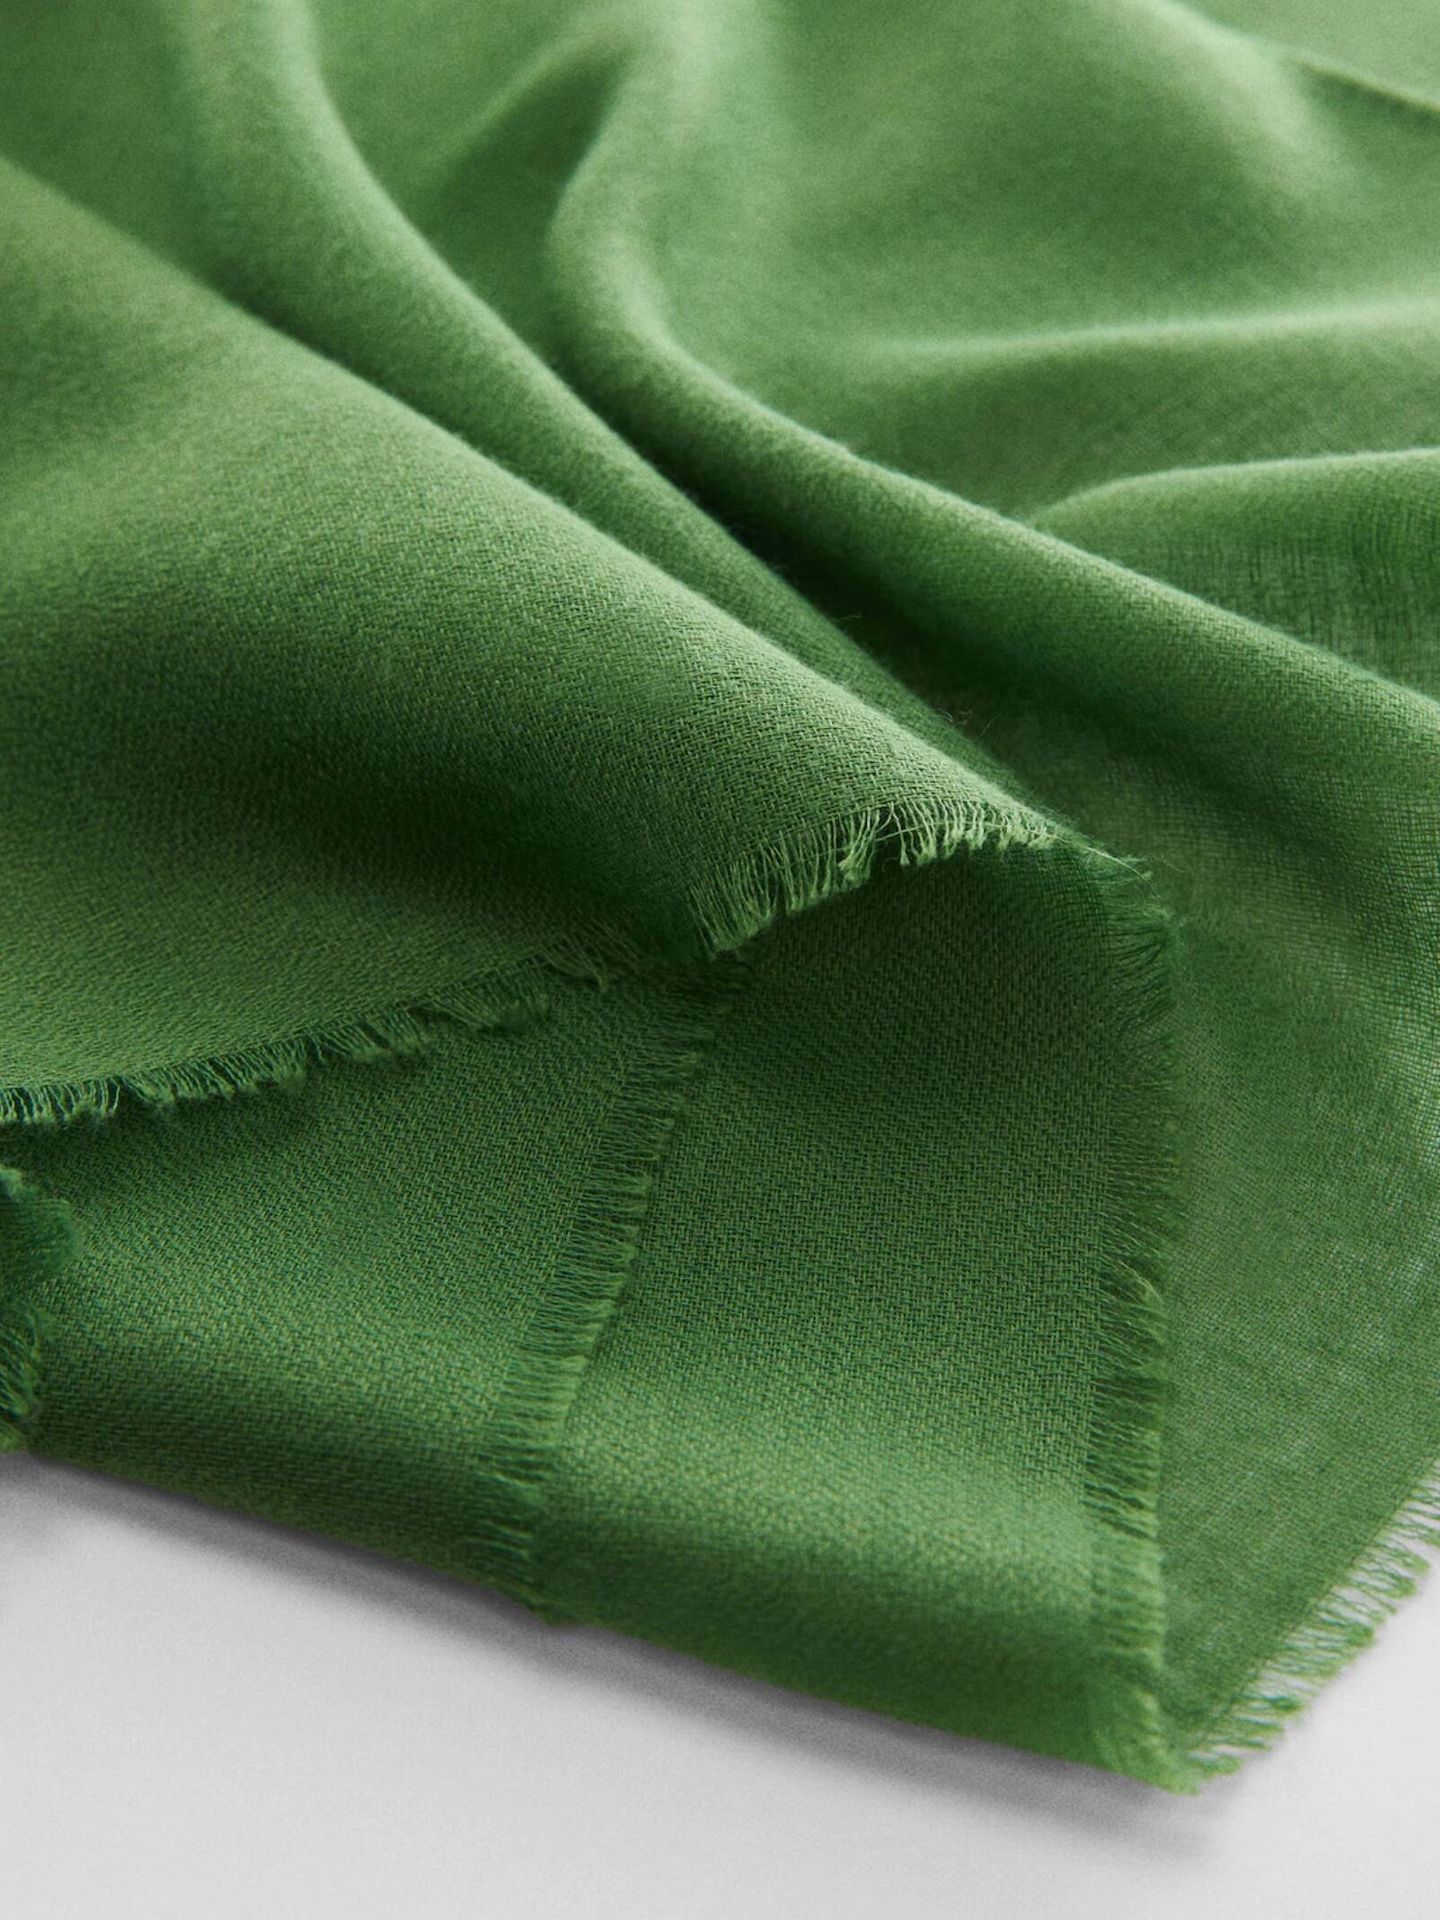 Súmate a la tendencia del verde con este pañuelo. (Cortesía/Mango)